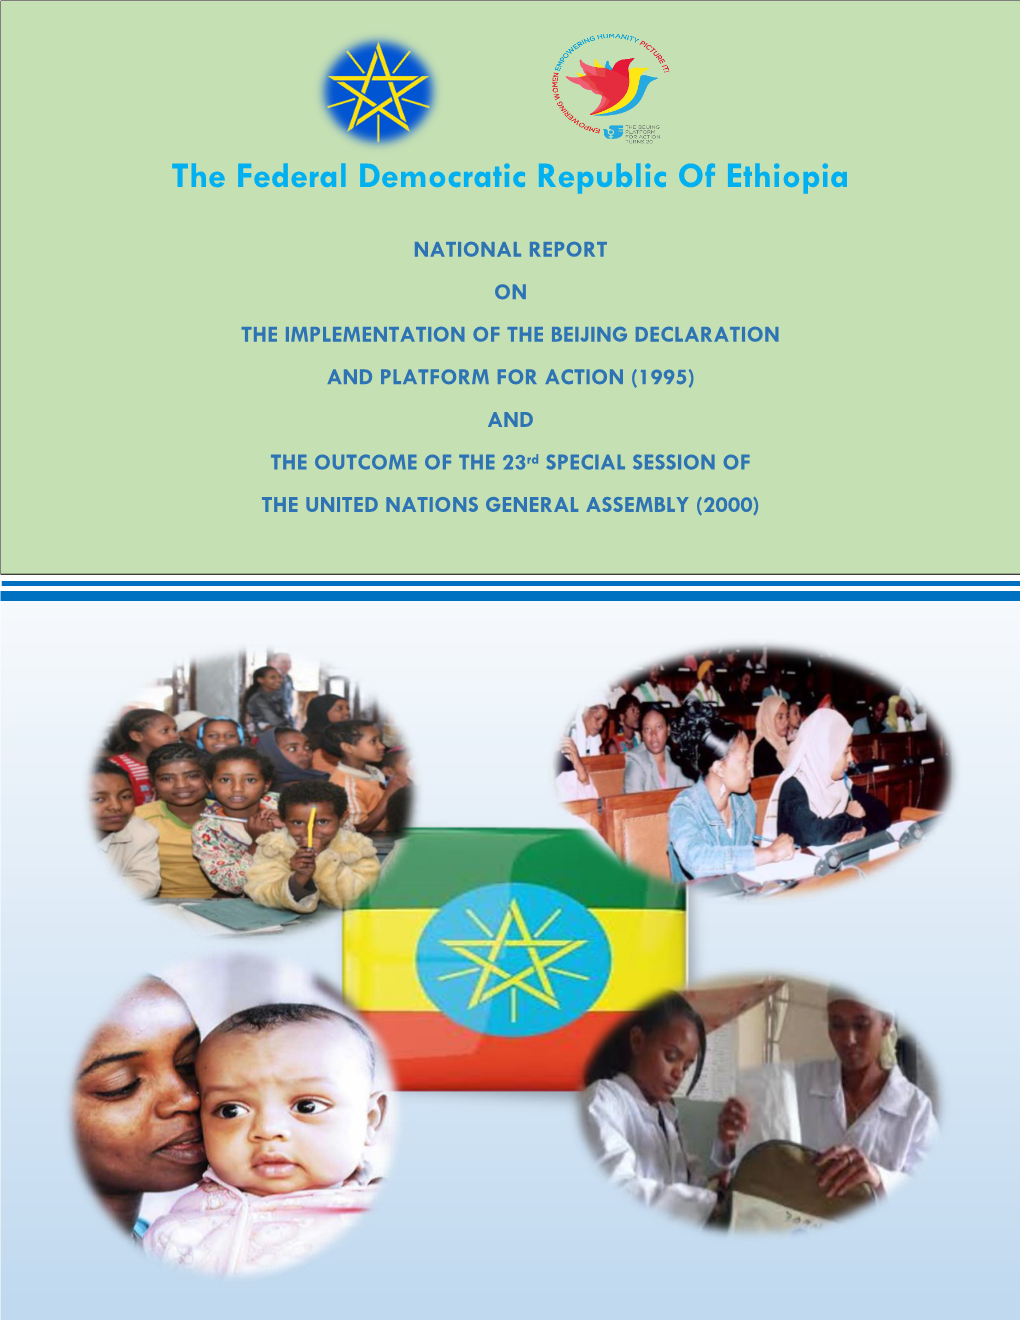 The Federal Democratic Republic of Ethiopia